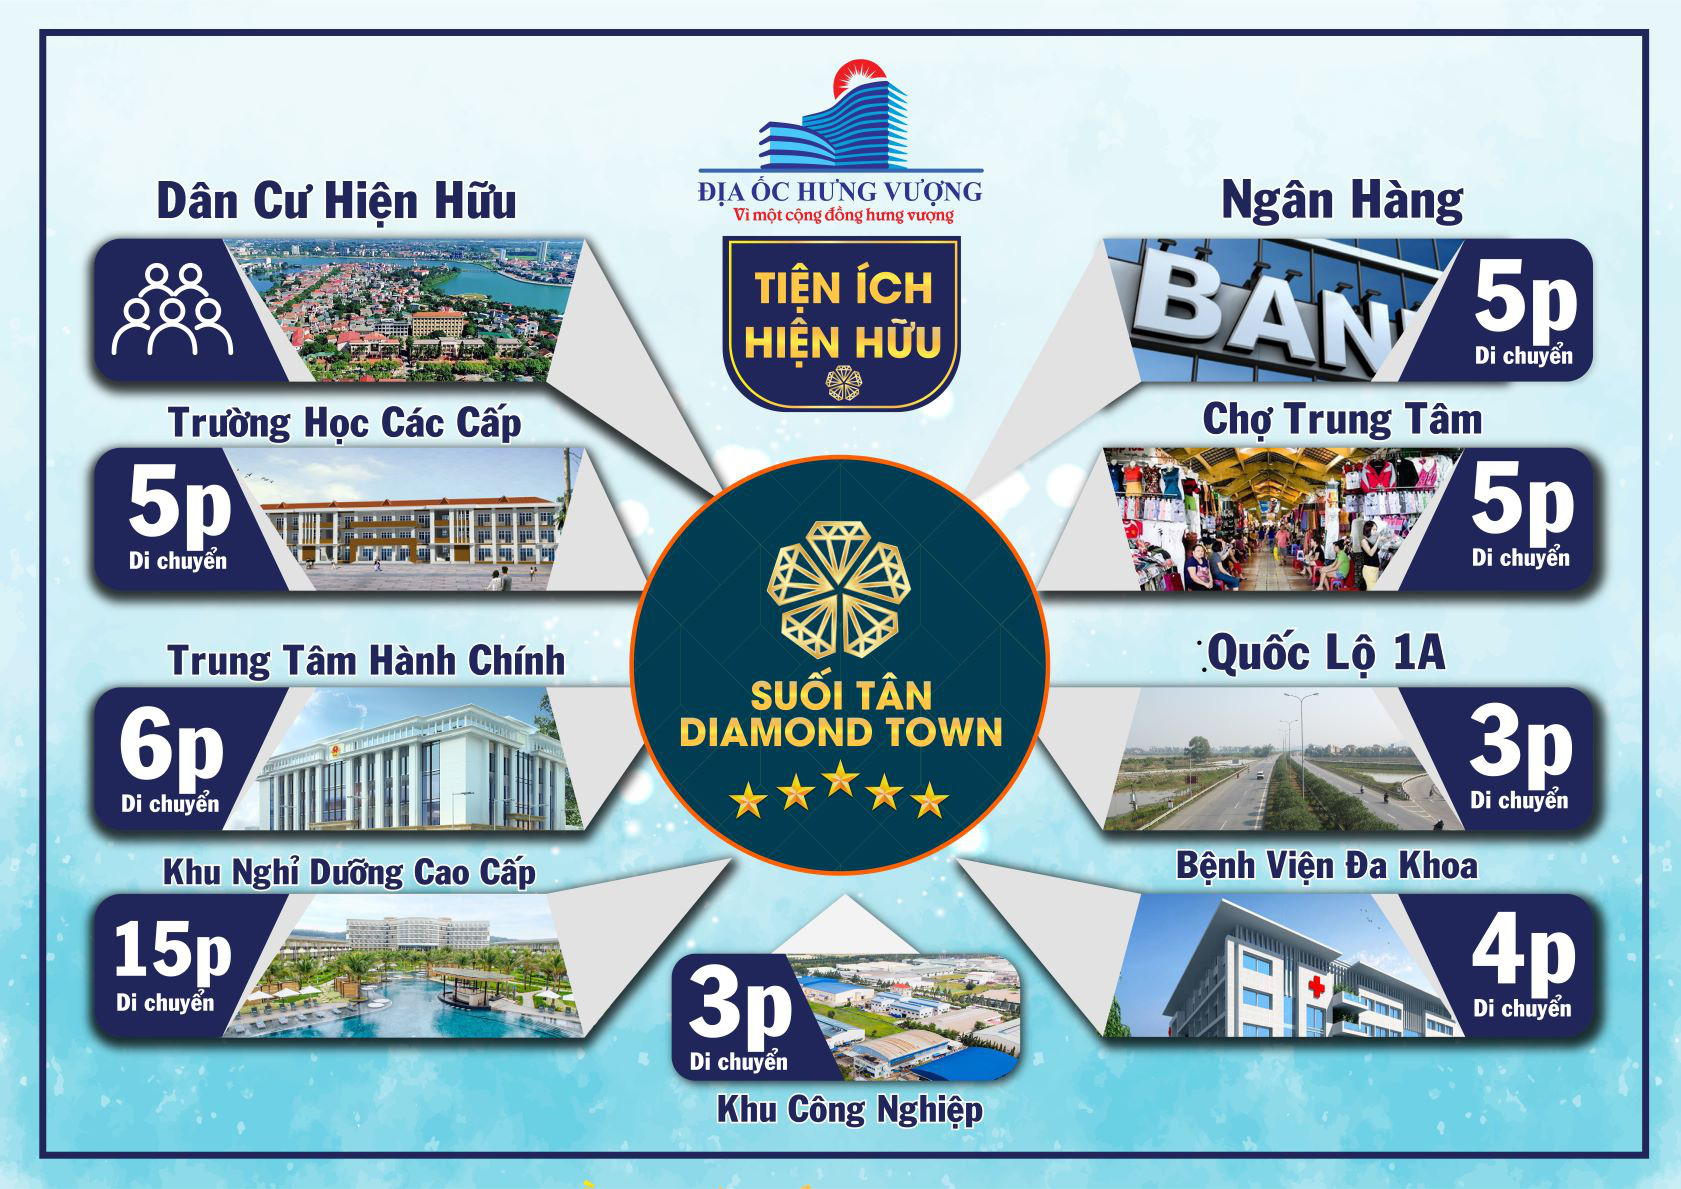 Bất động sản công nghiệp tại Suối Tân Diamond Town thu hút đầu tư - Ảnh 1.